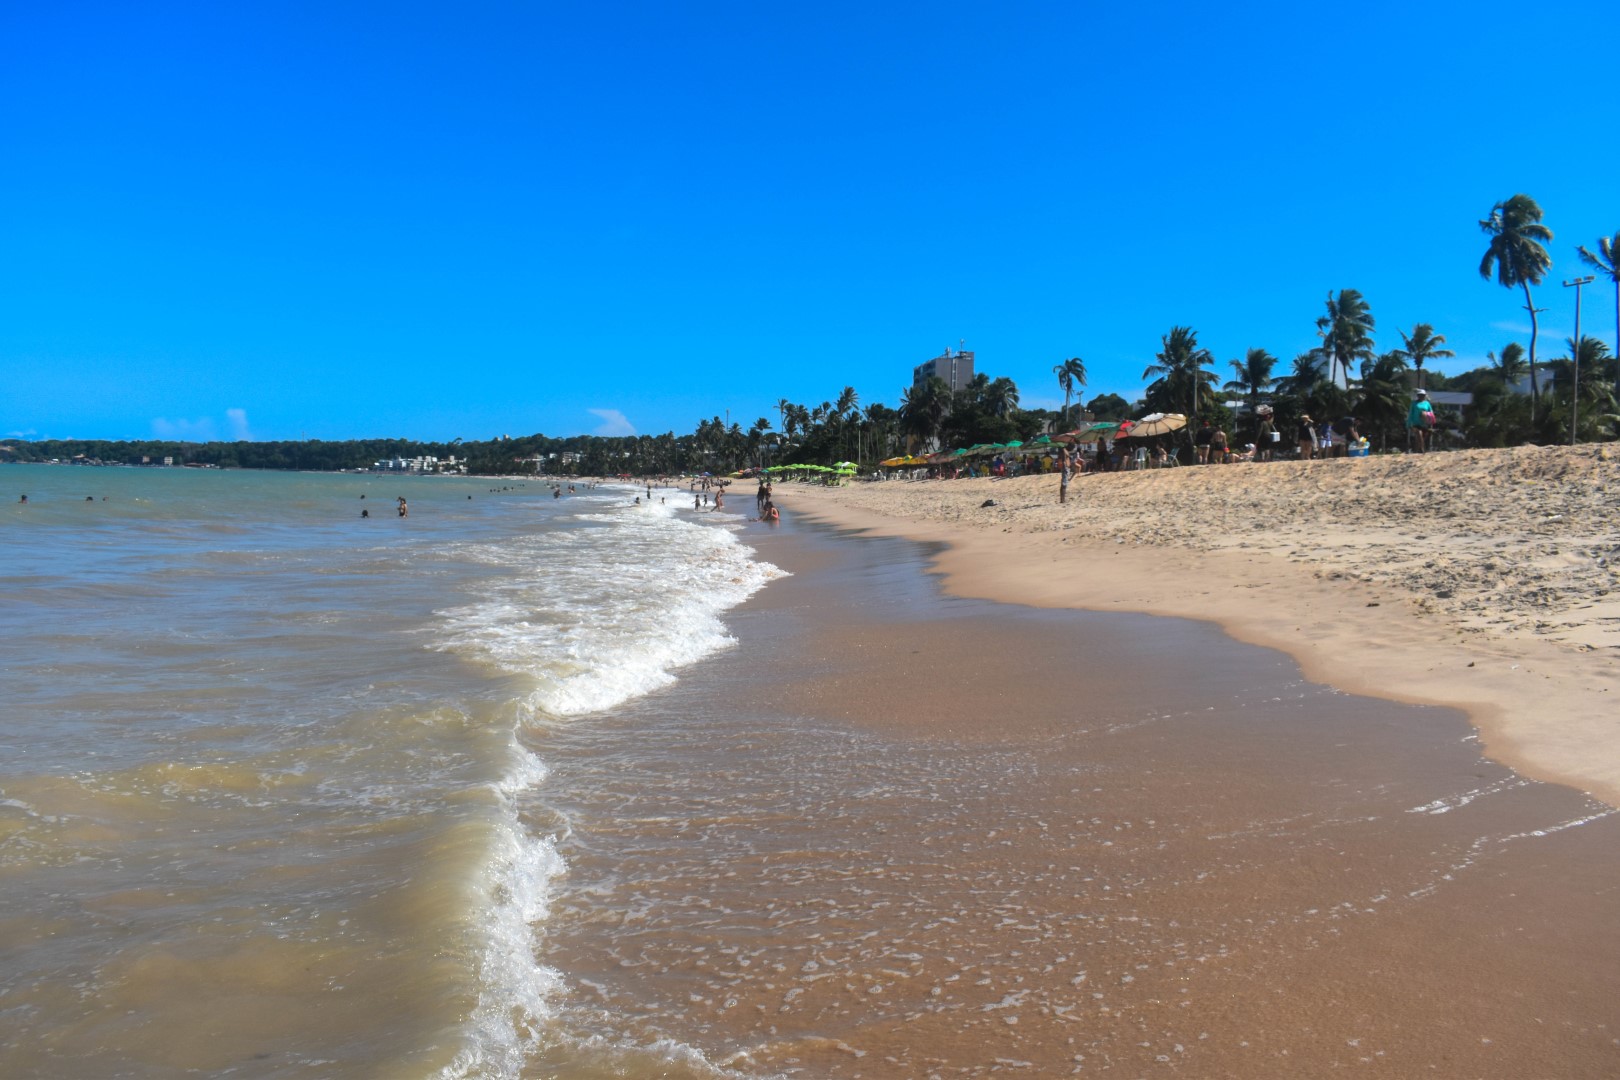 Praia de Cabo Branco, João Pessoa - State of Paraíba